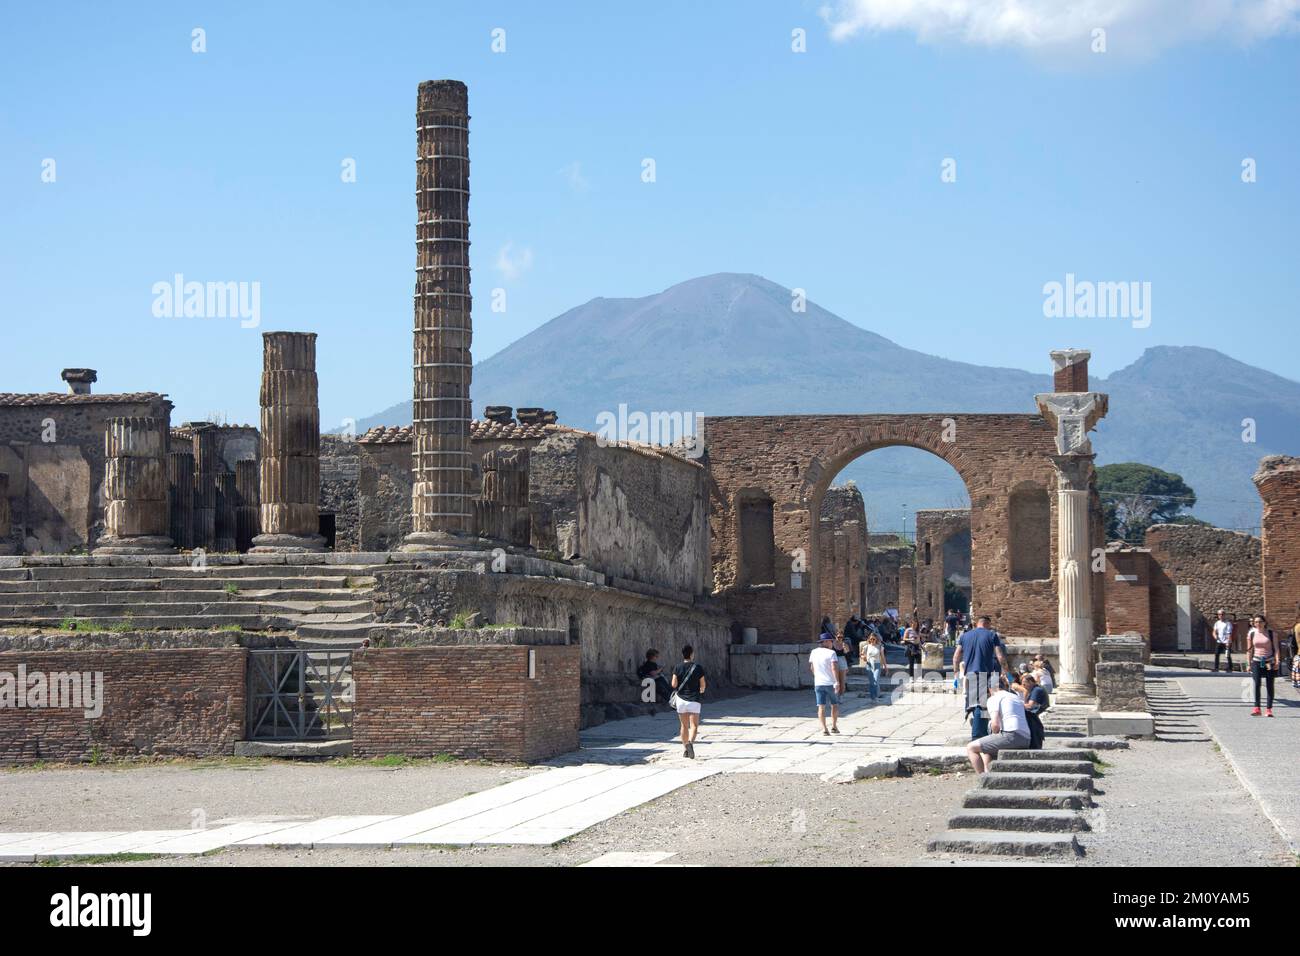 The Temple of Jupitor (Capitolium) with Mount Vesuvius behind, Pompeii, Campania Region, Italy Stock Photo